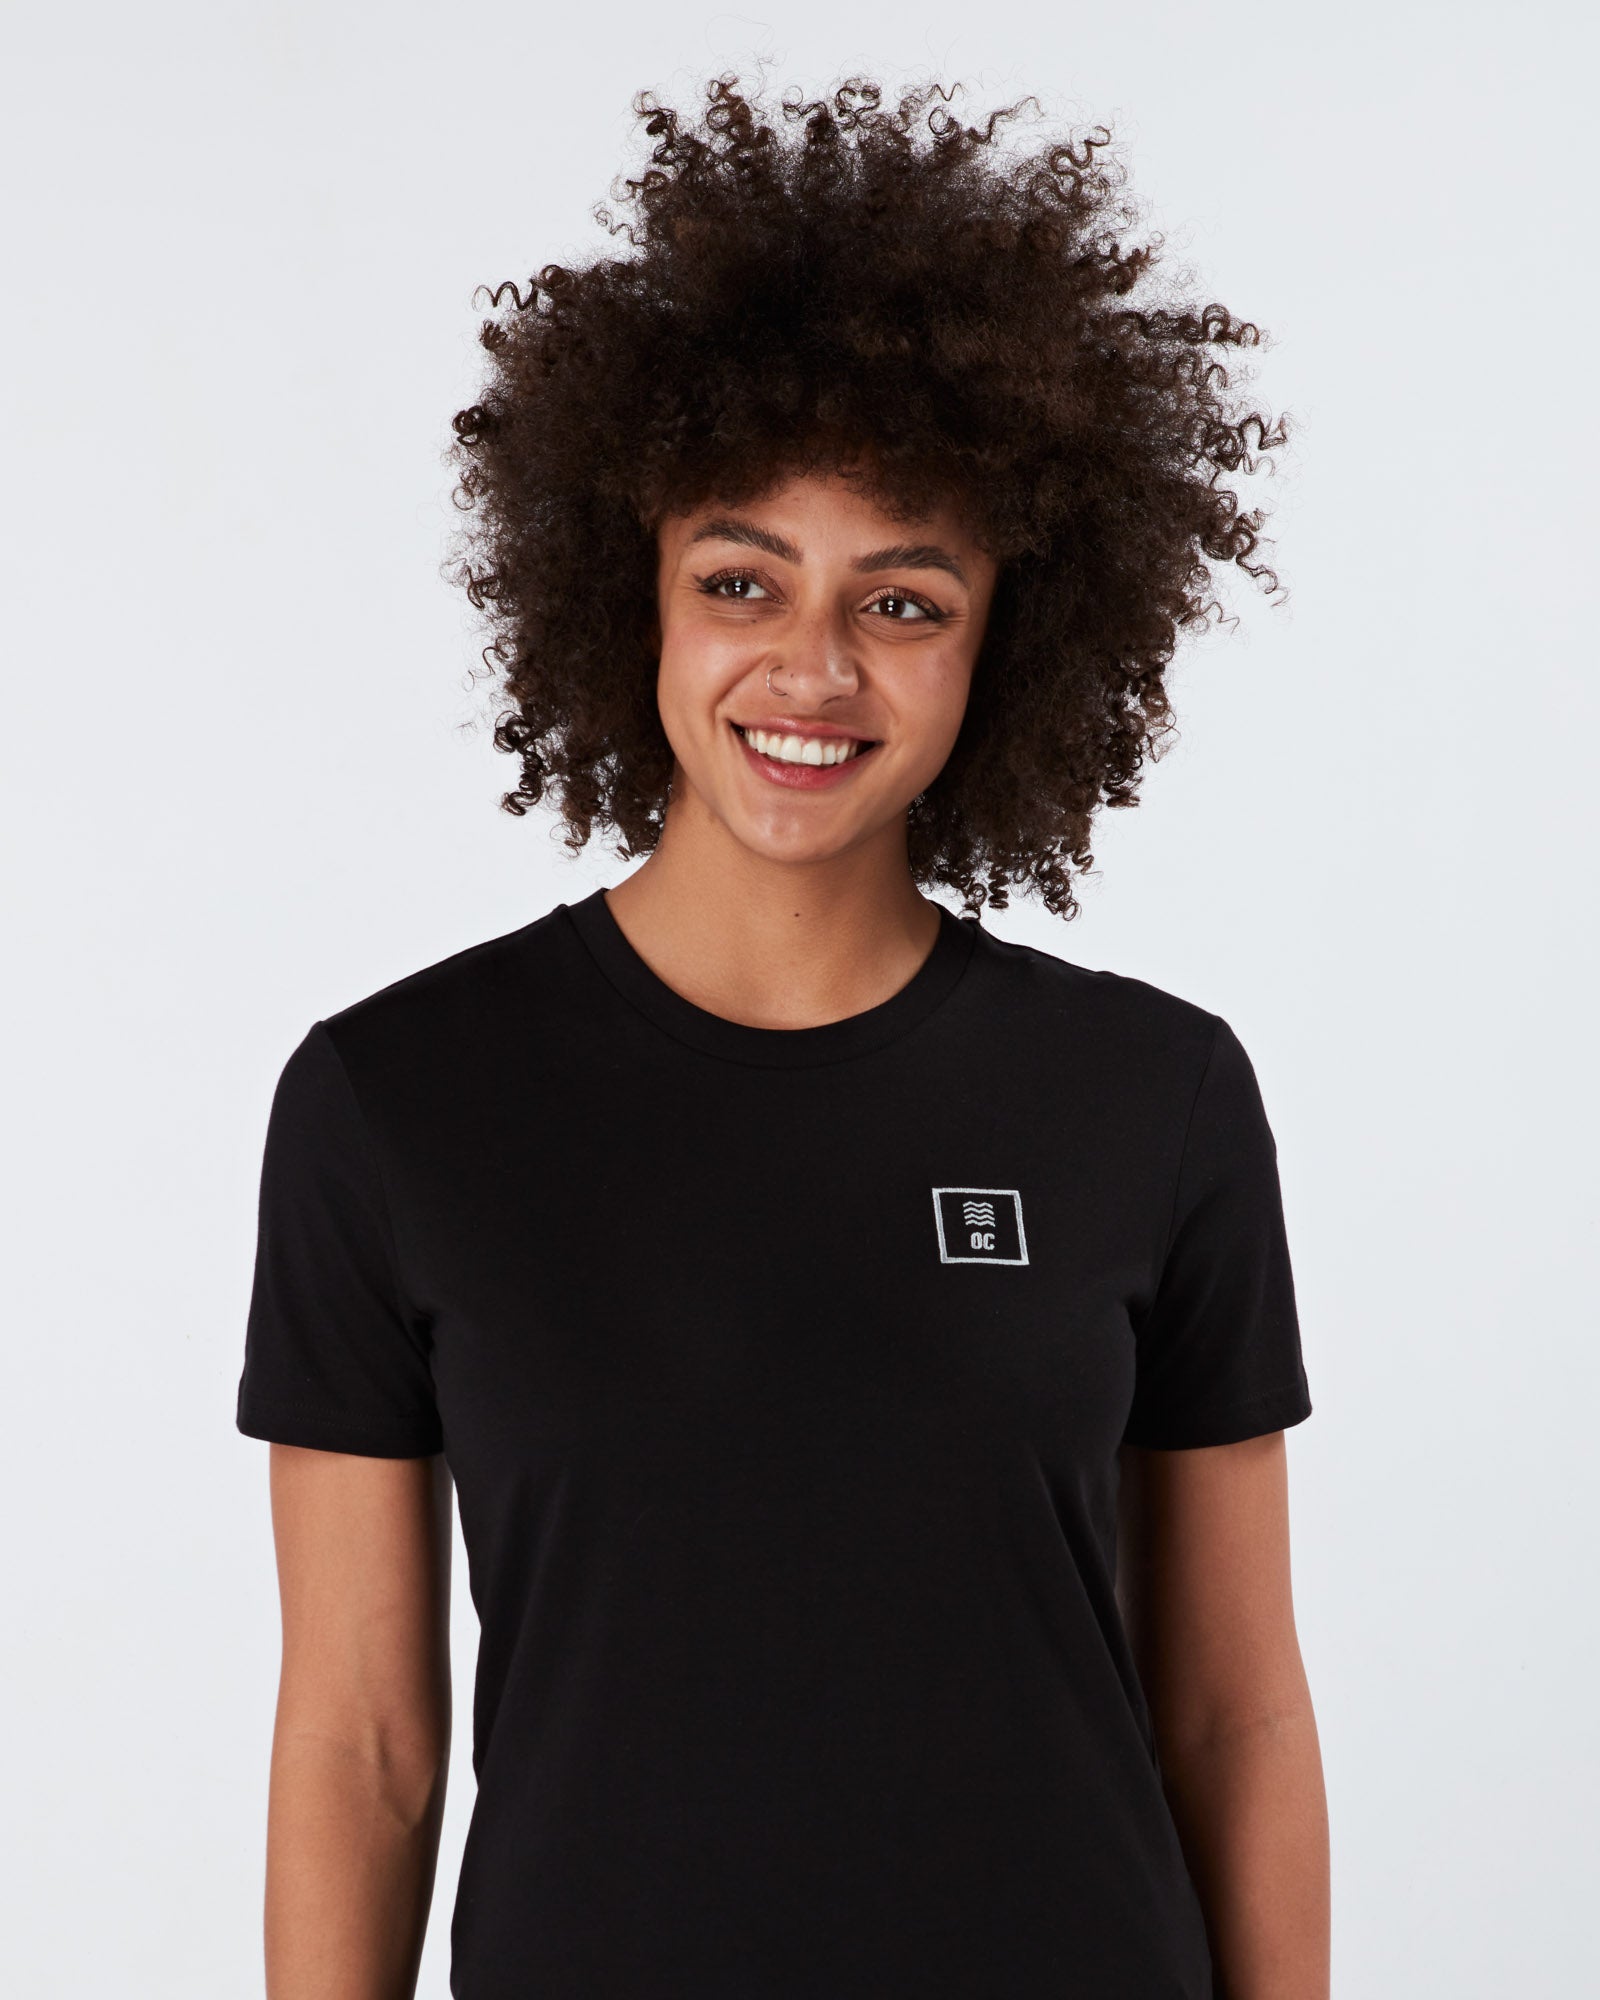 OC Lux Tshirt - Black